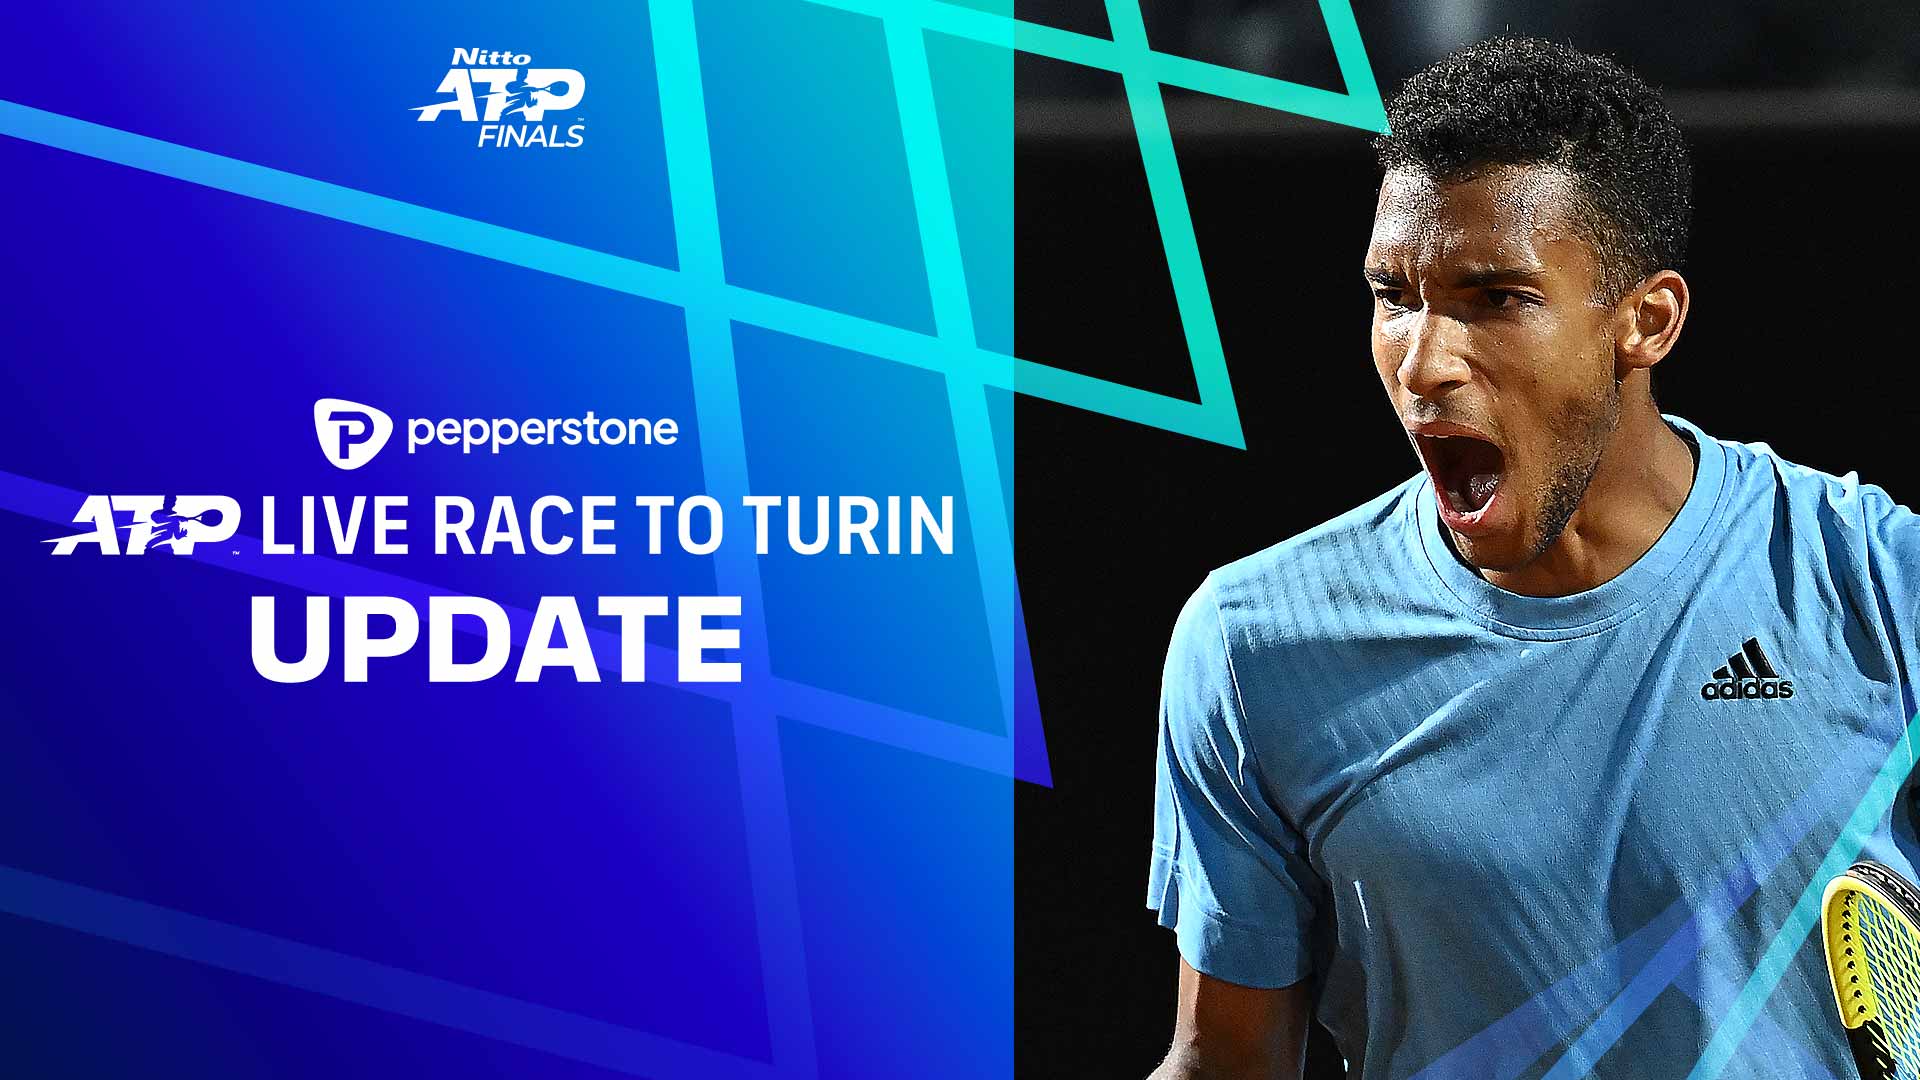 ATP LIVE RANKINGS RACE. Nadal, Medvedev, Tsitsipas, Berrettini are